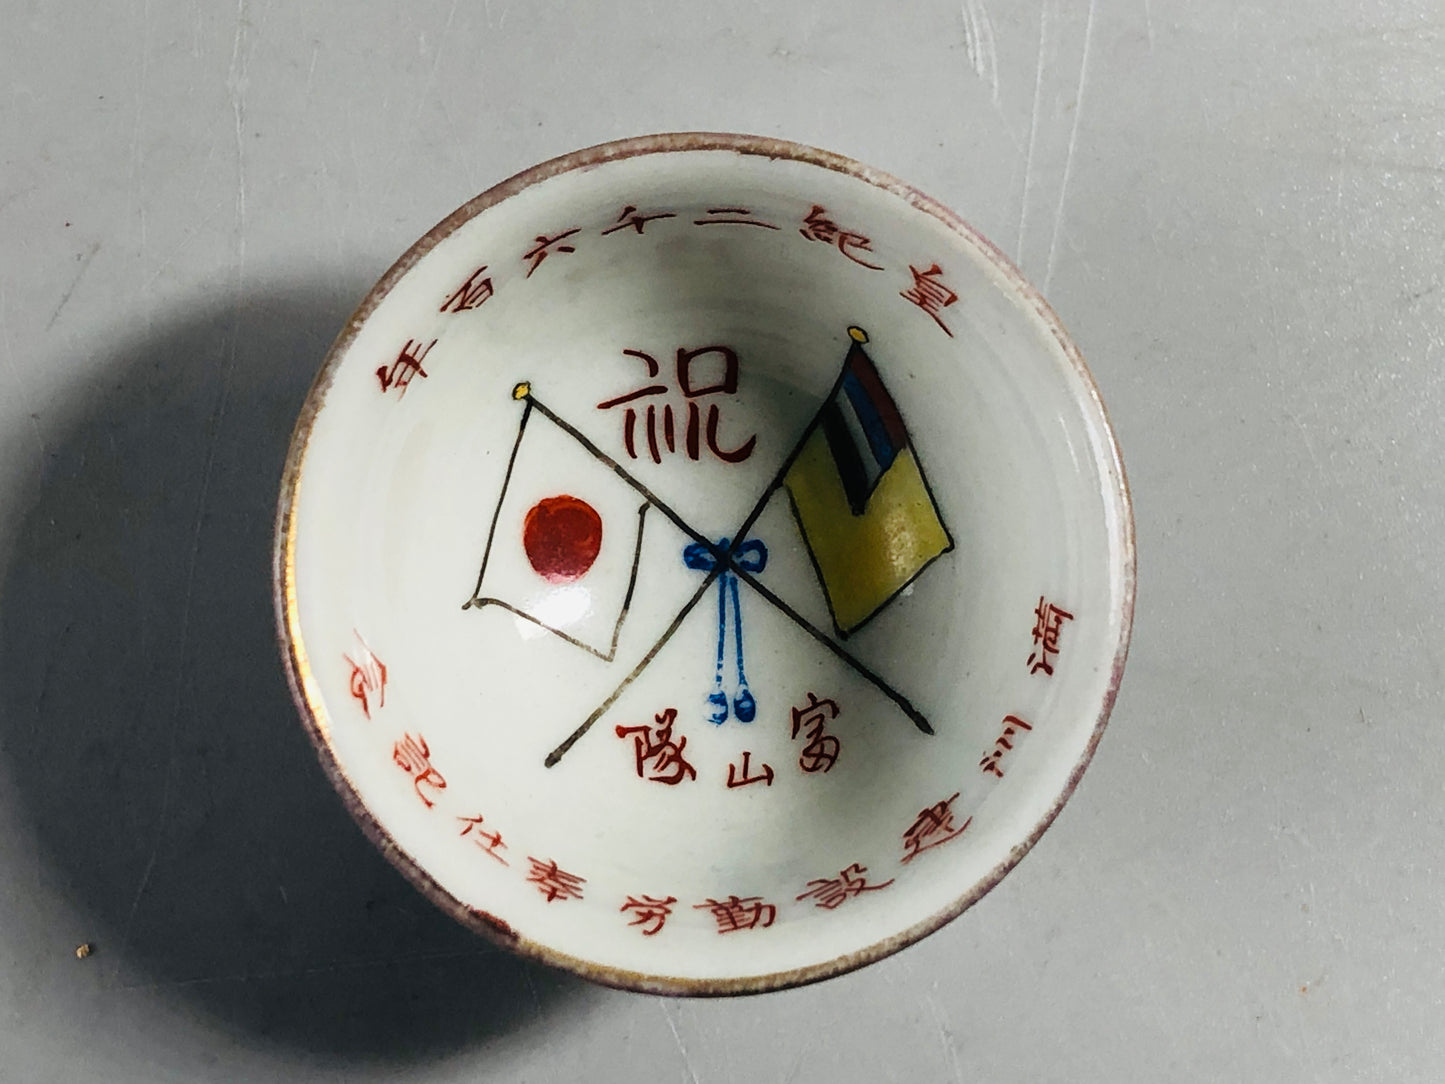 Y7092 Imperial Japan Army Sake cup set of 5 Manchuria Japan WW2 vintage cup